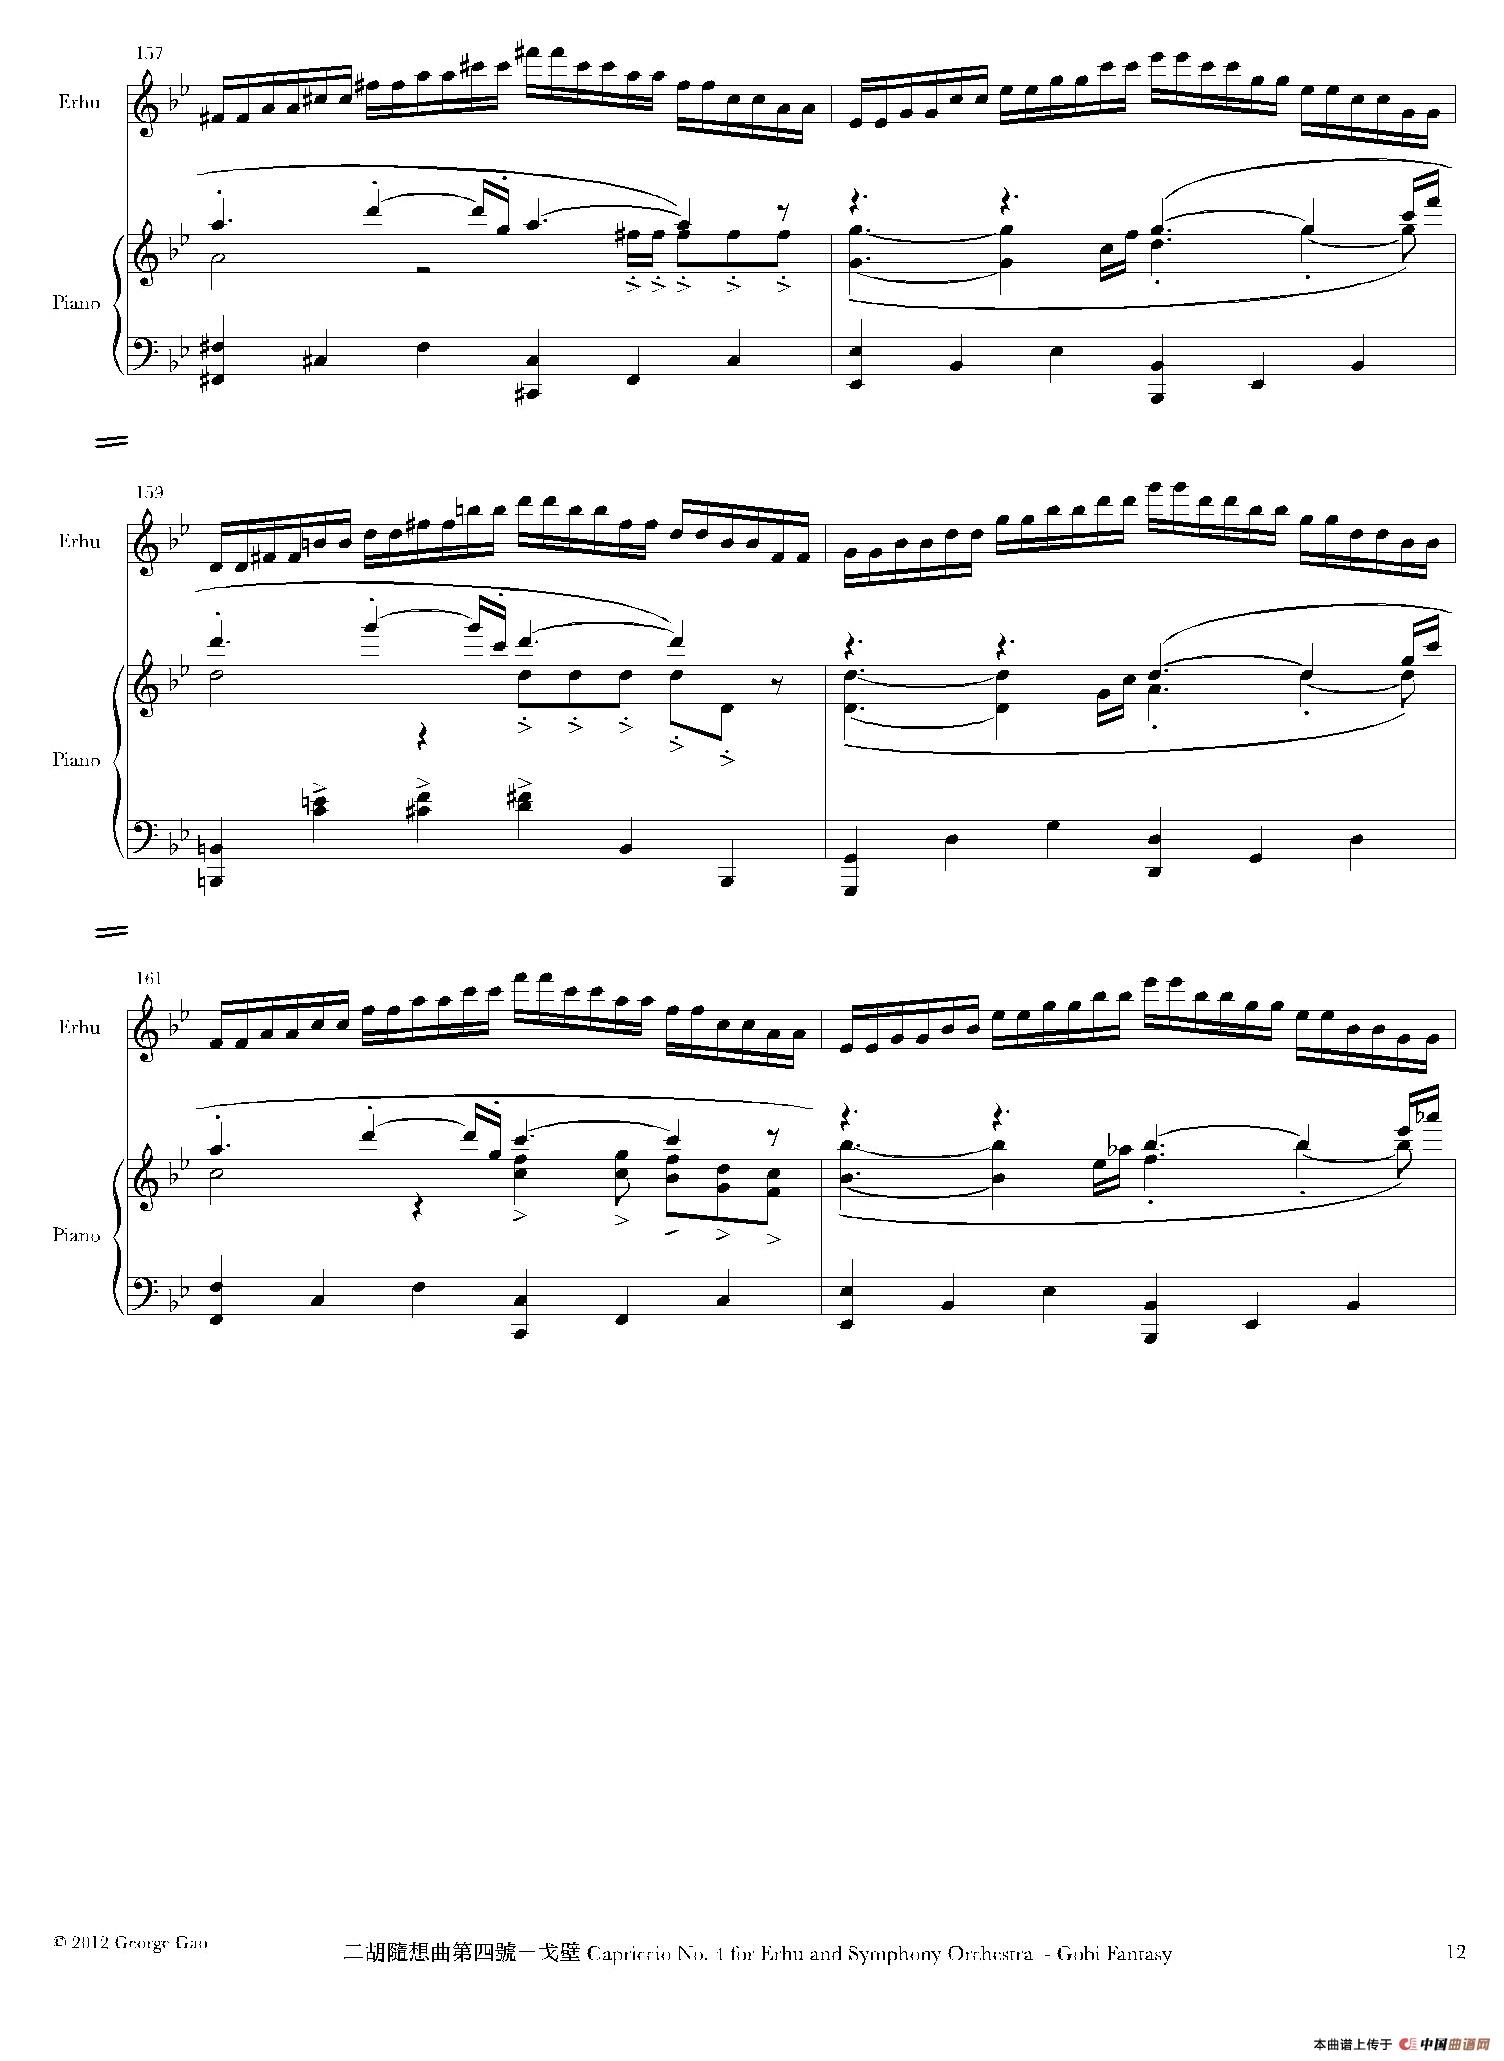 二胡随想曲第四号——戈壁（二胡+钢琴伴奏）(1)_原文件名：019.jpg